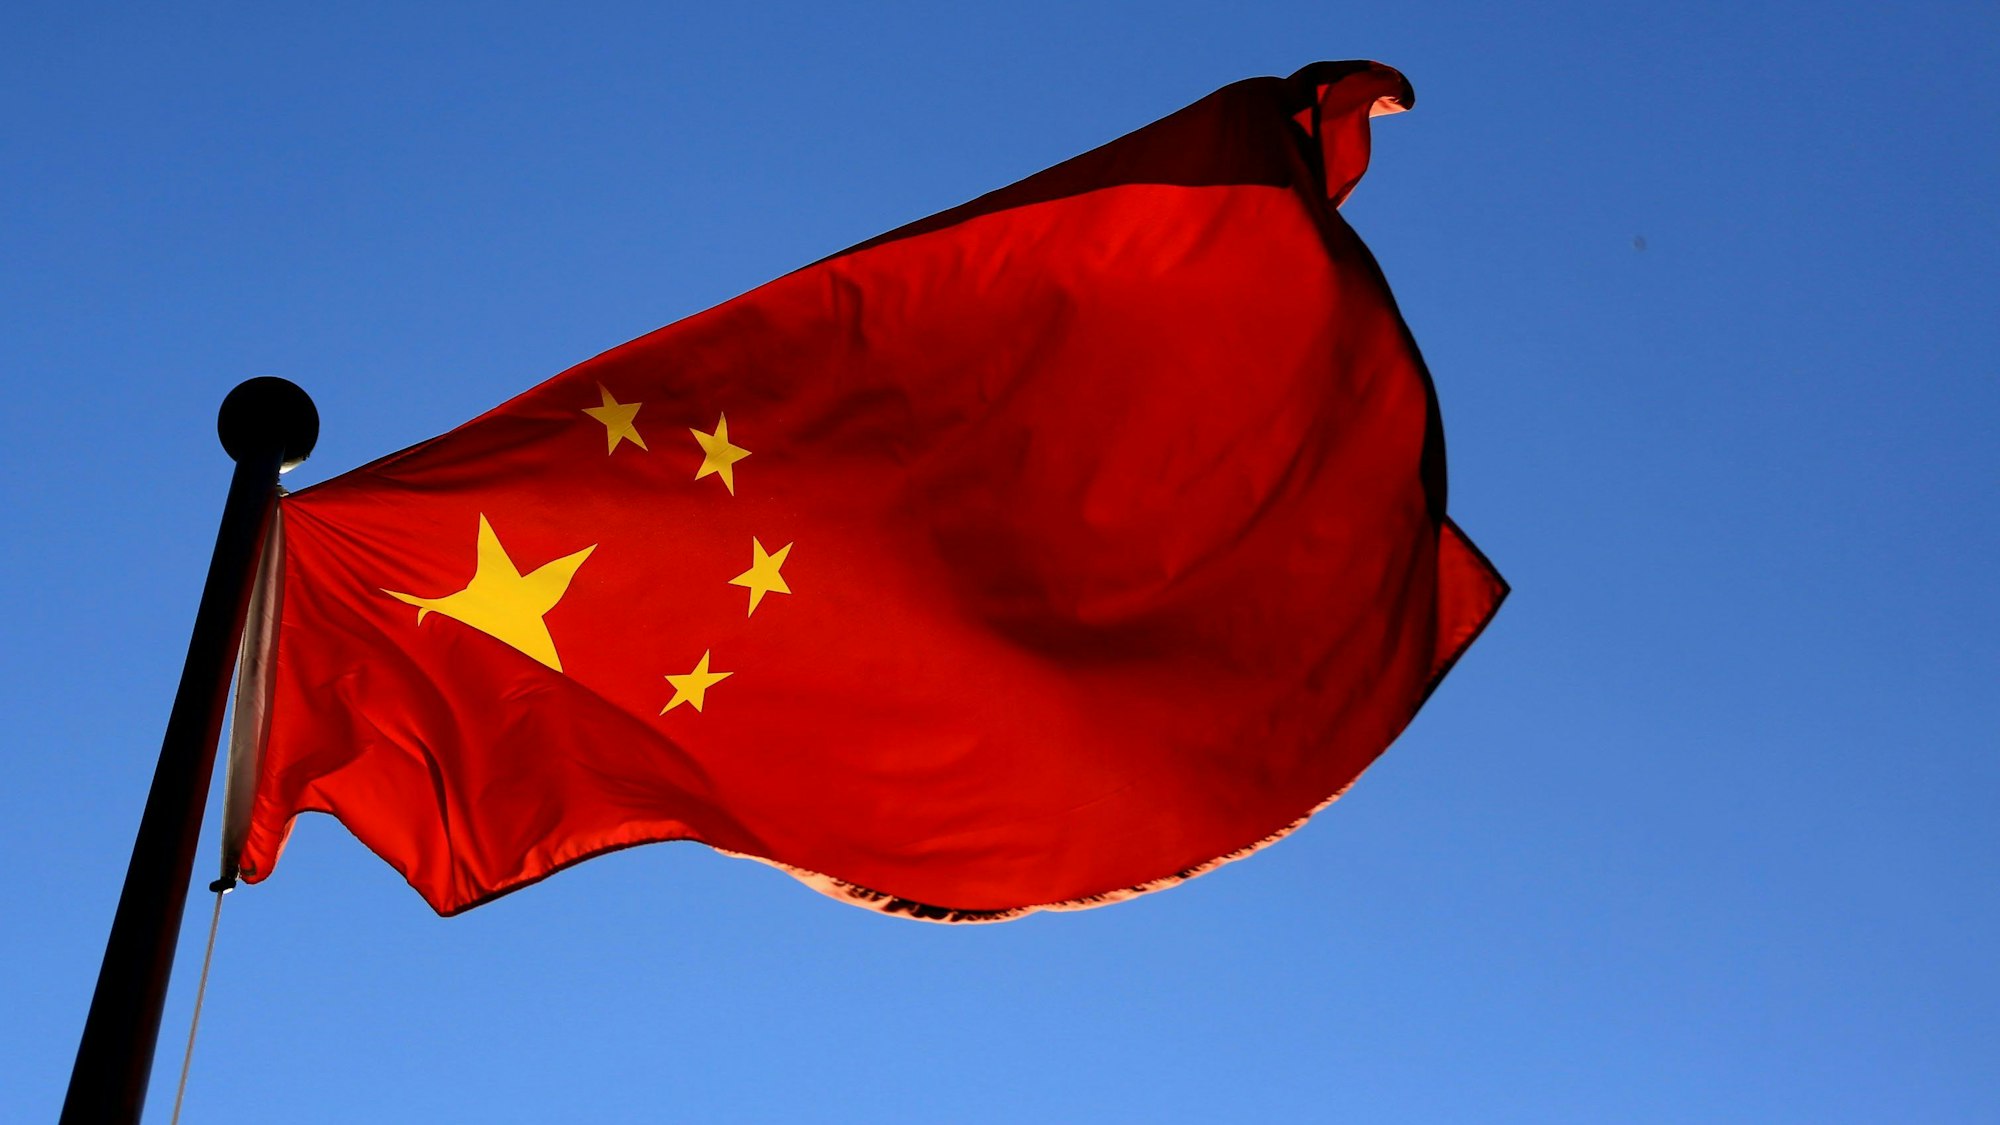 Man sieht die Flagge Chinas vor dem blauen Himmel.